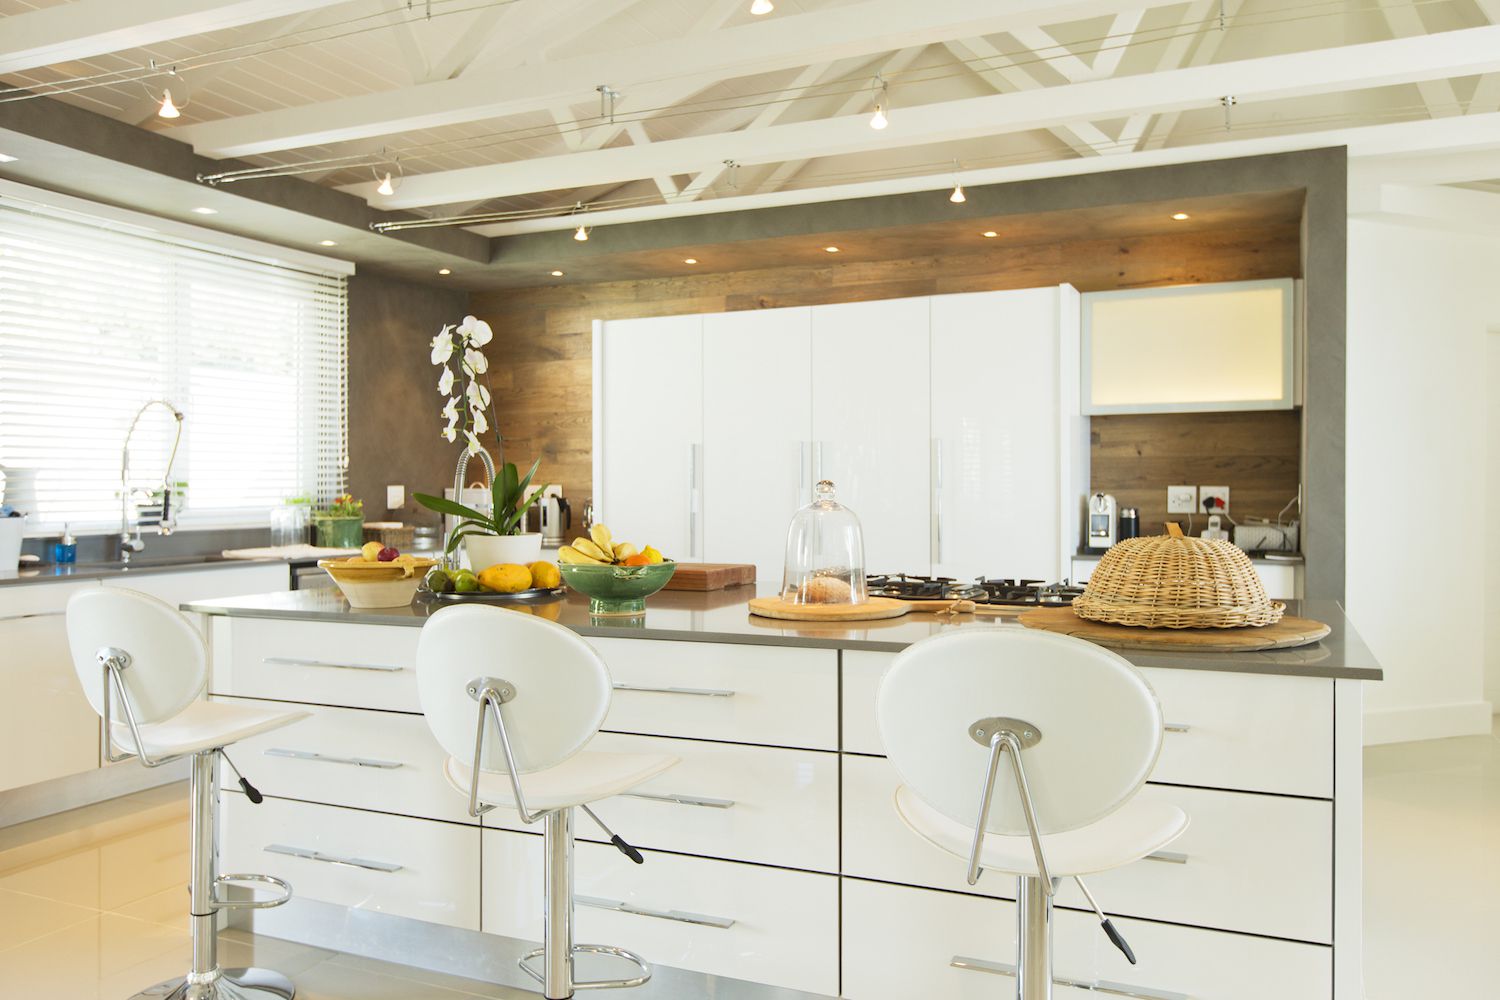 Uma cozinha decorada em branco, marrom e cinza